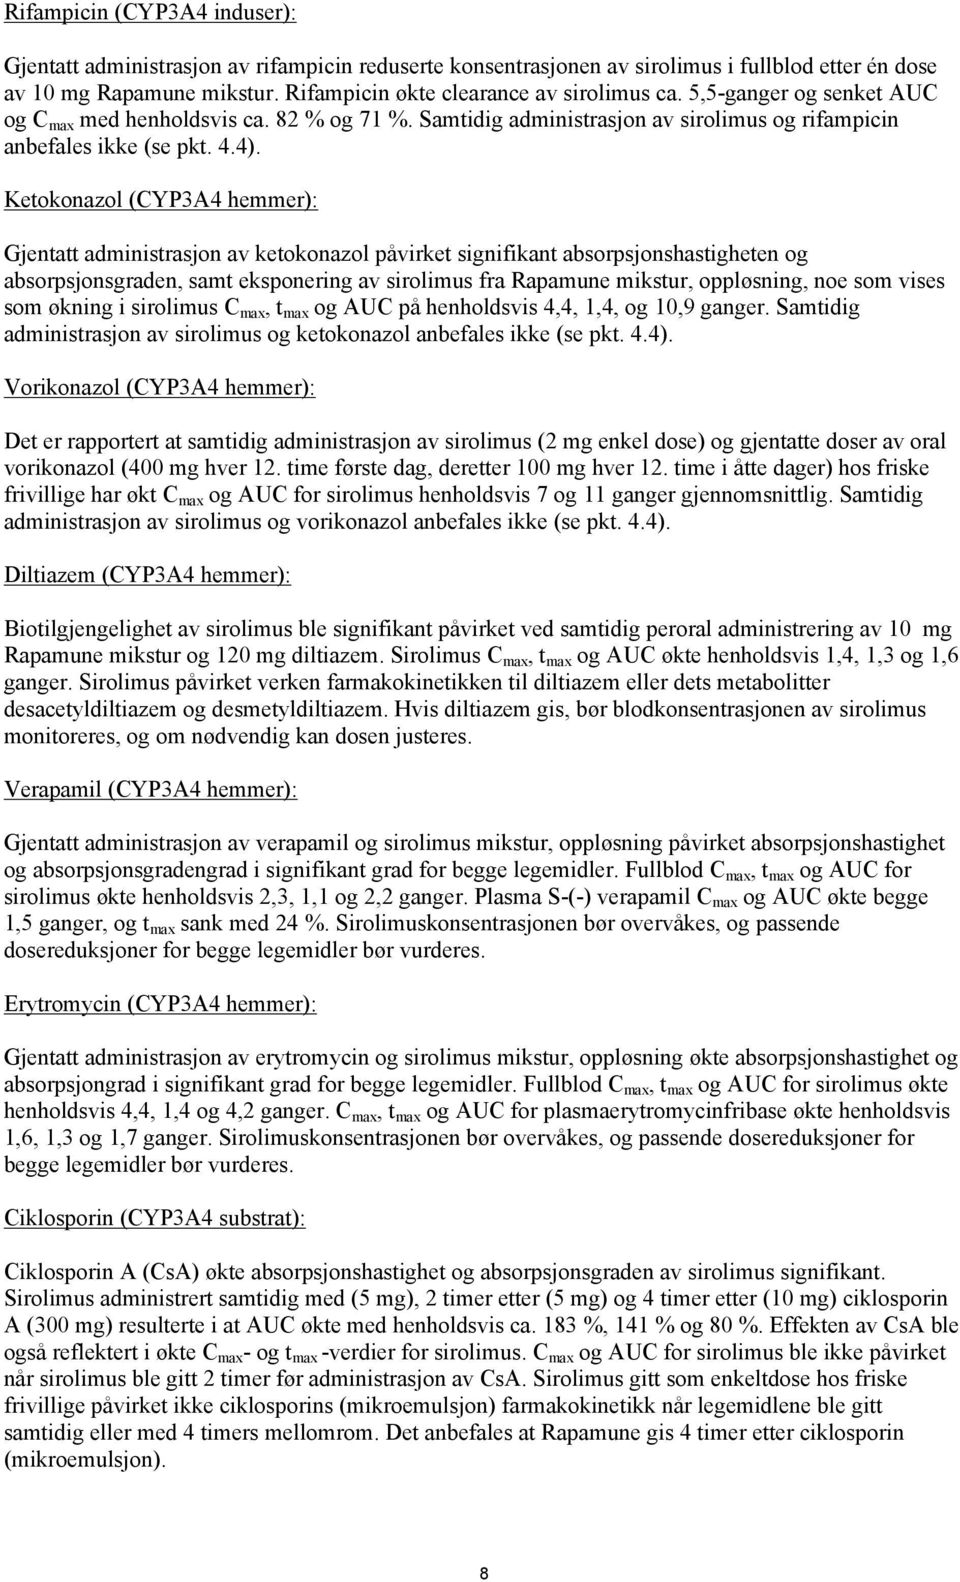 Ketokonazol (CYP3A4 hemmer): Gjentatt administrasjon av ketokonazol påvirket signifikant absorpsjonshastigheten og absorpsjonsgraden, samt eksponering av sirolimus fra Rapamune mikstur, oppløsning,